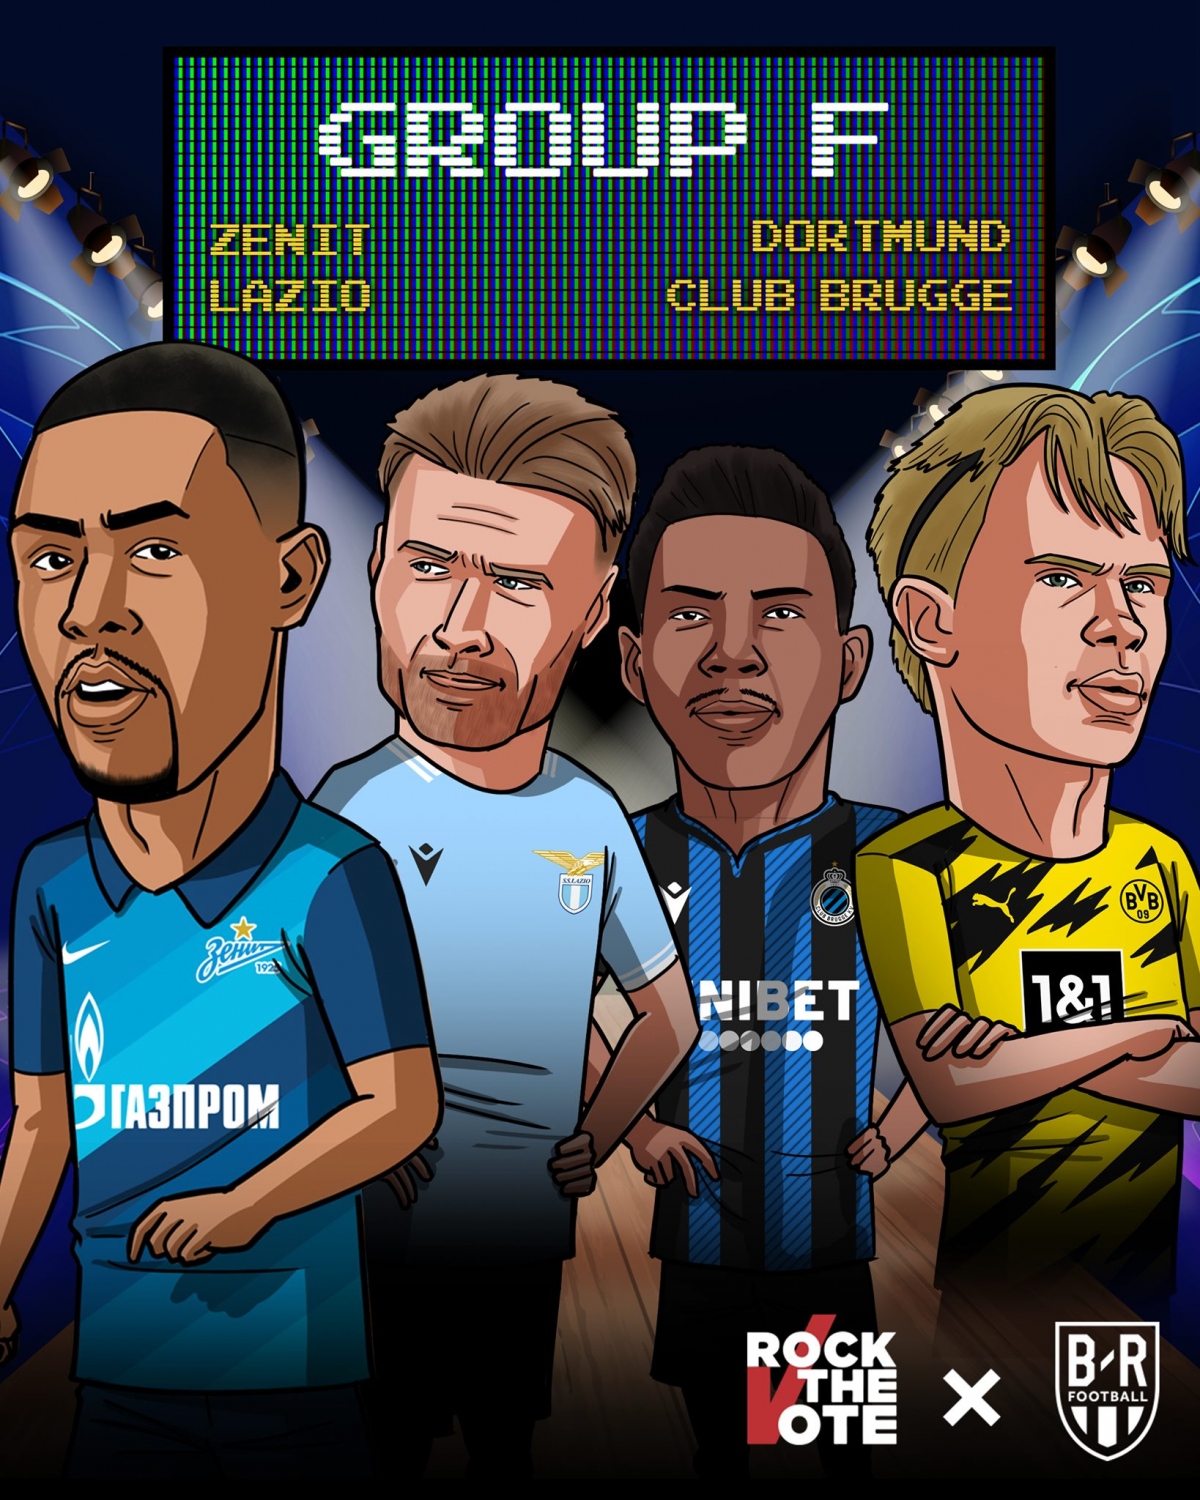 20/10 23:55 Zenit - Club Brugge 21/10 02:00 Lazio - Dortmund